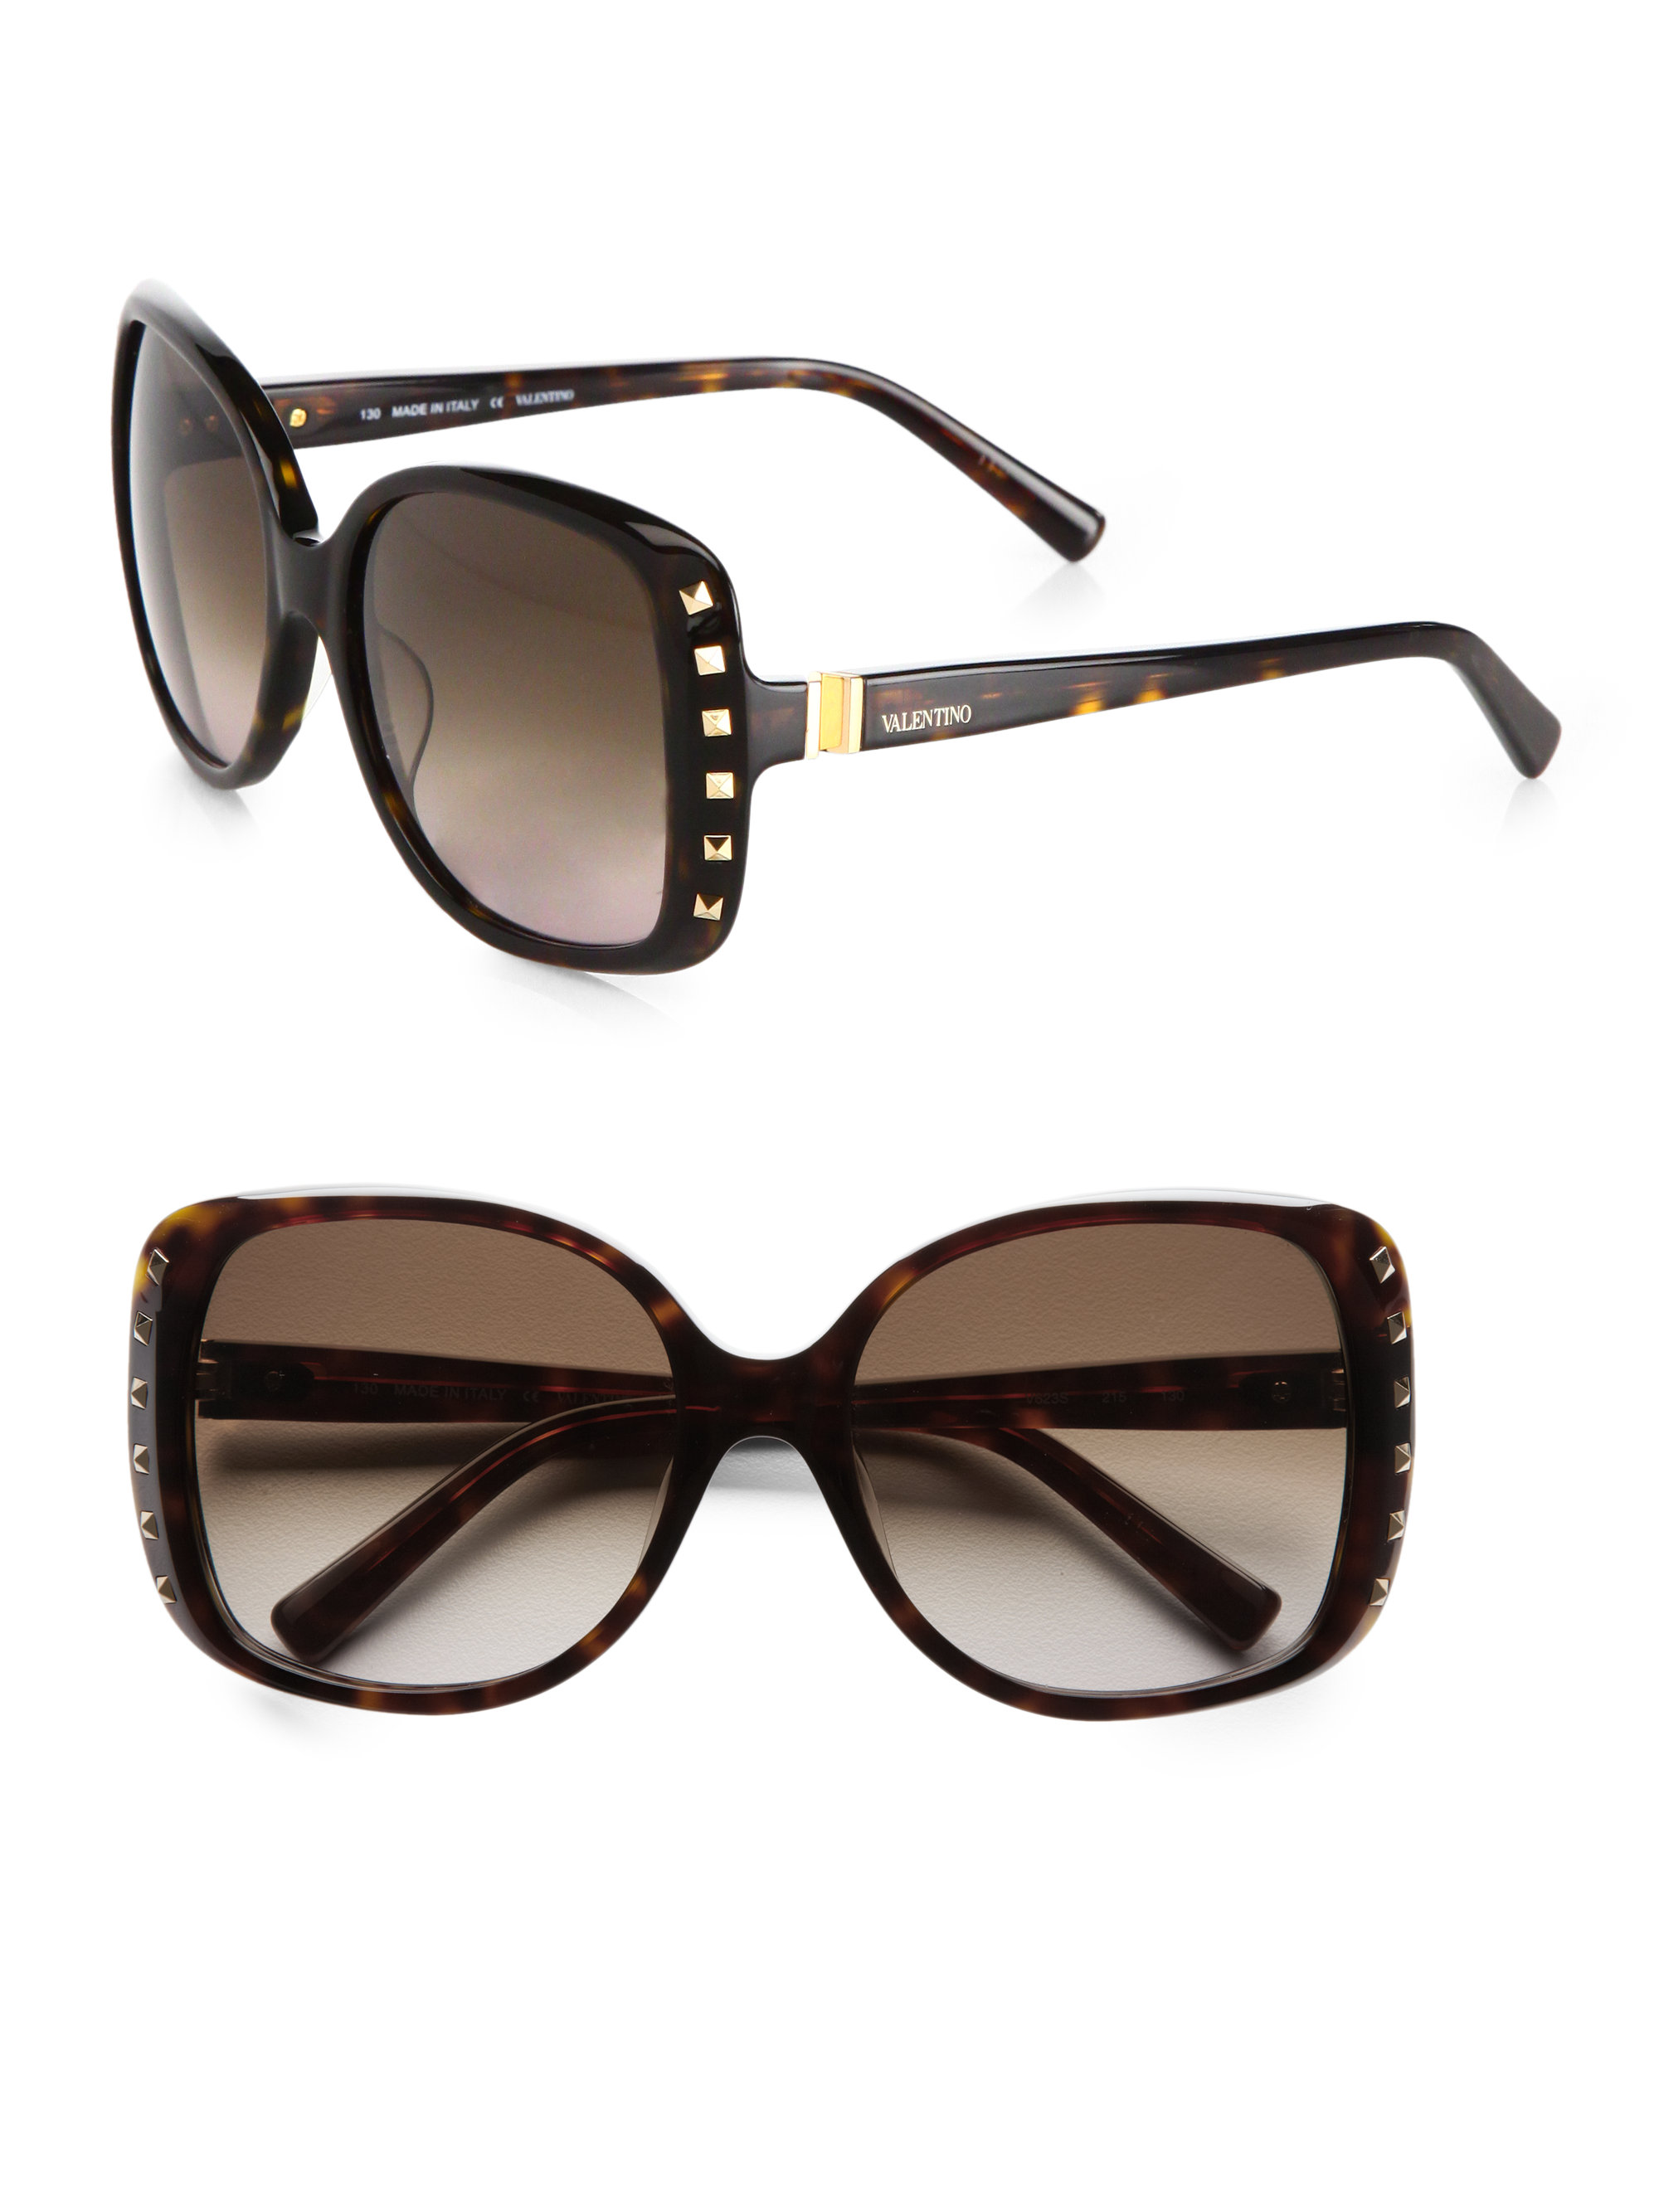 Lyst - Valentino Rock Stud Square Sunglasses in Black